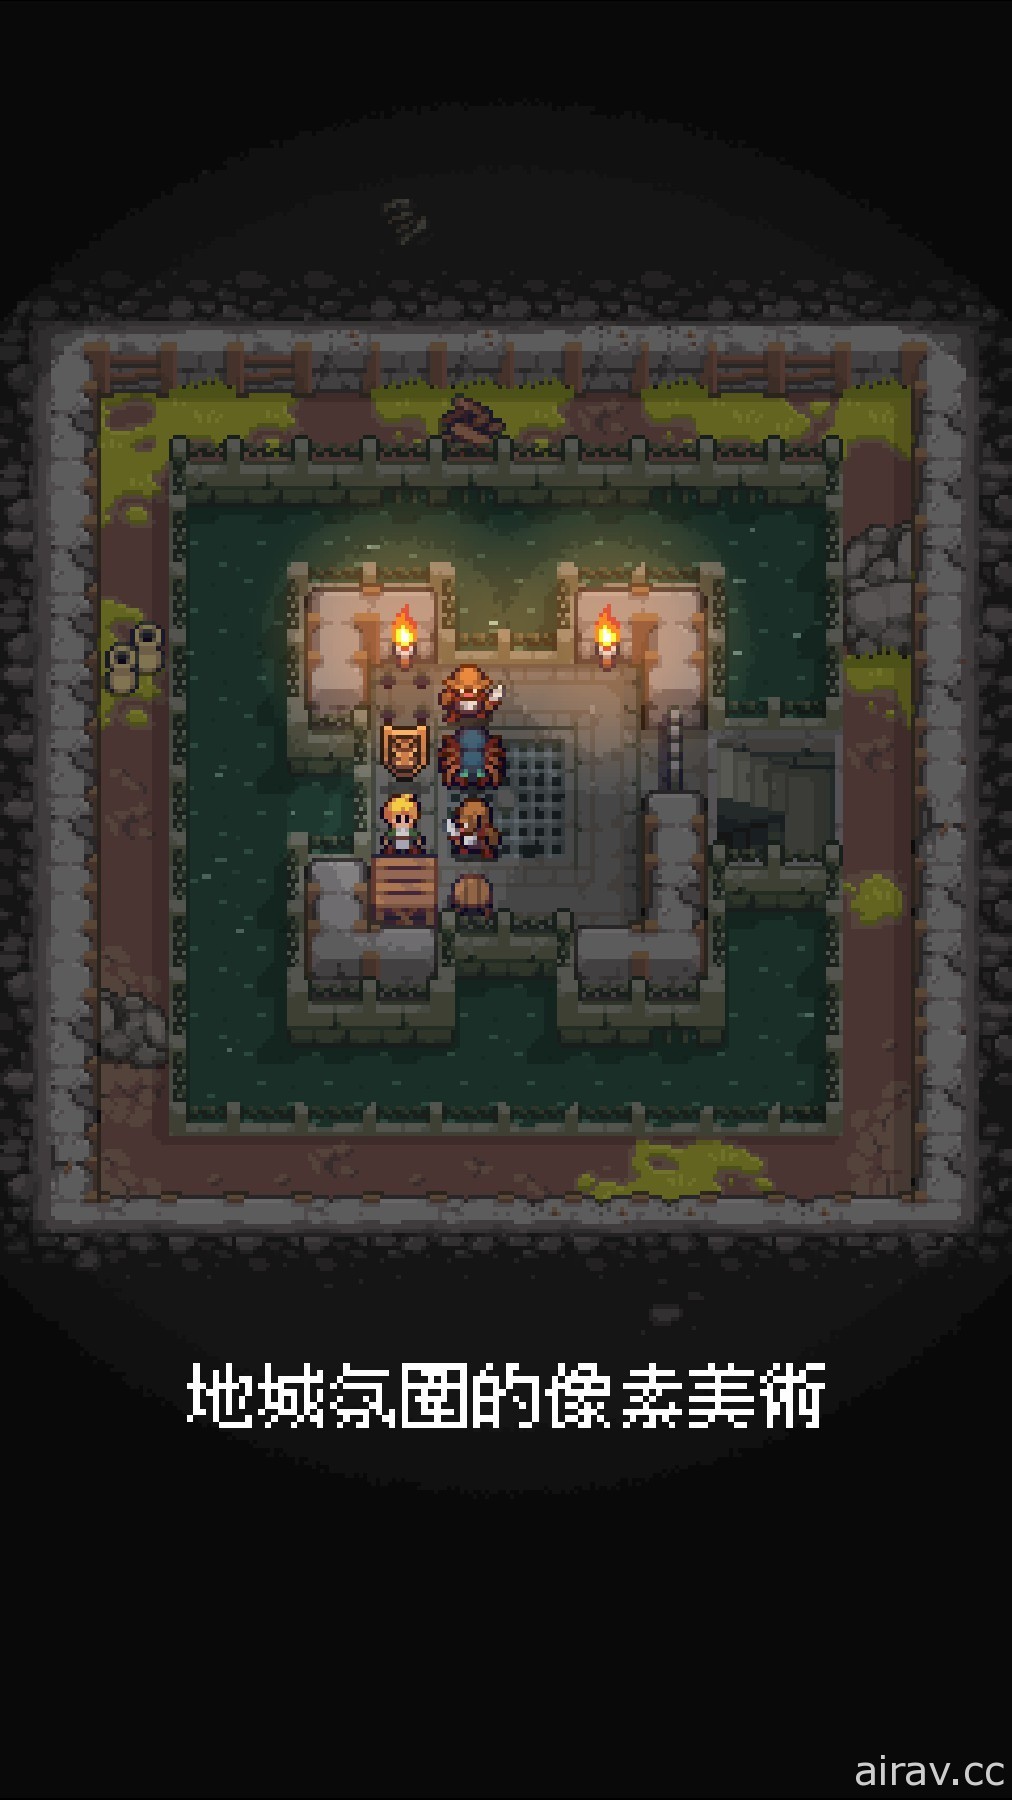 倉庫番解謎遊戲《地城謎蹤》將於 8 月登陸 iOS 平台 即日起開放先行預購